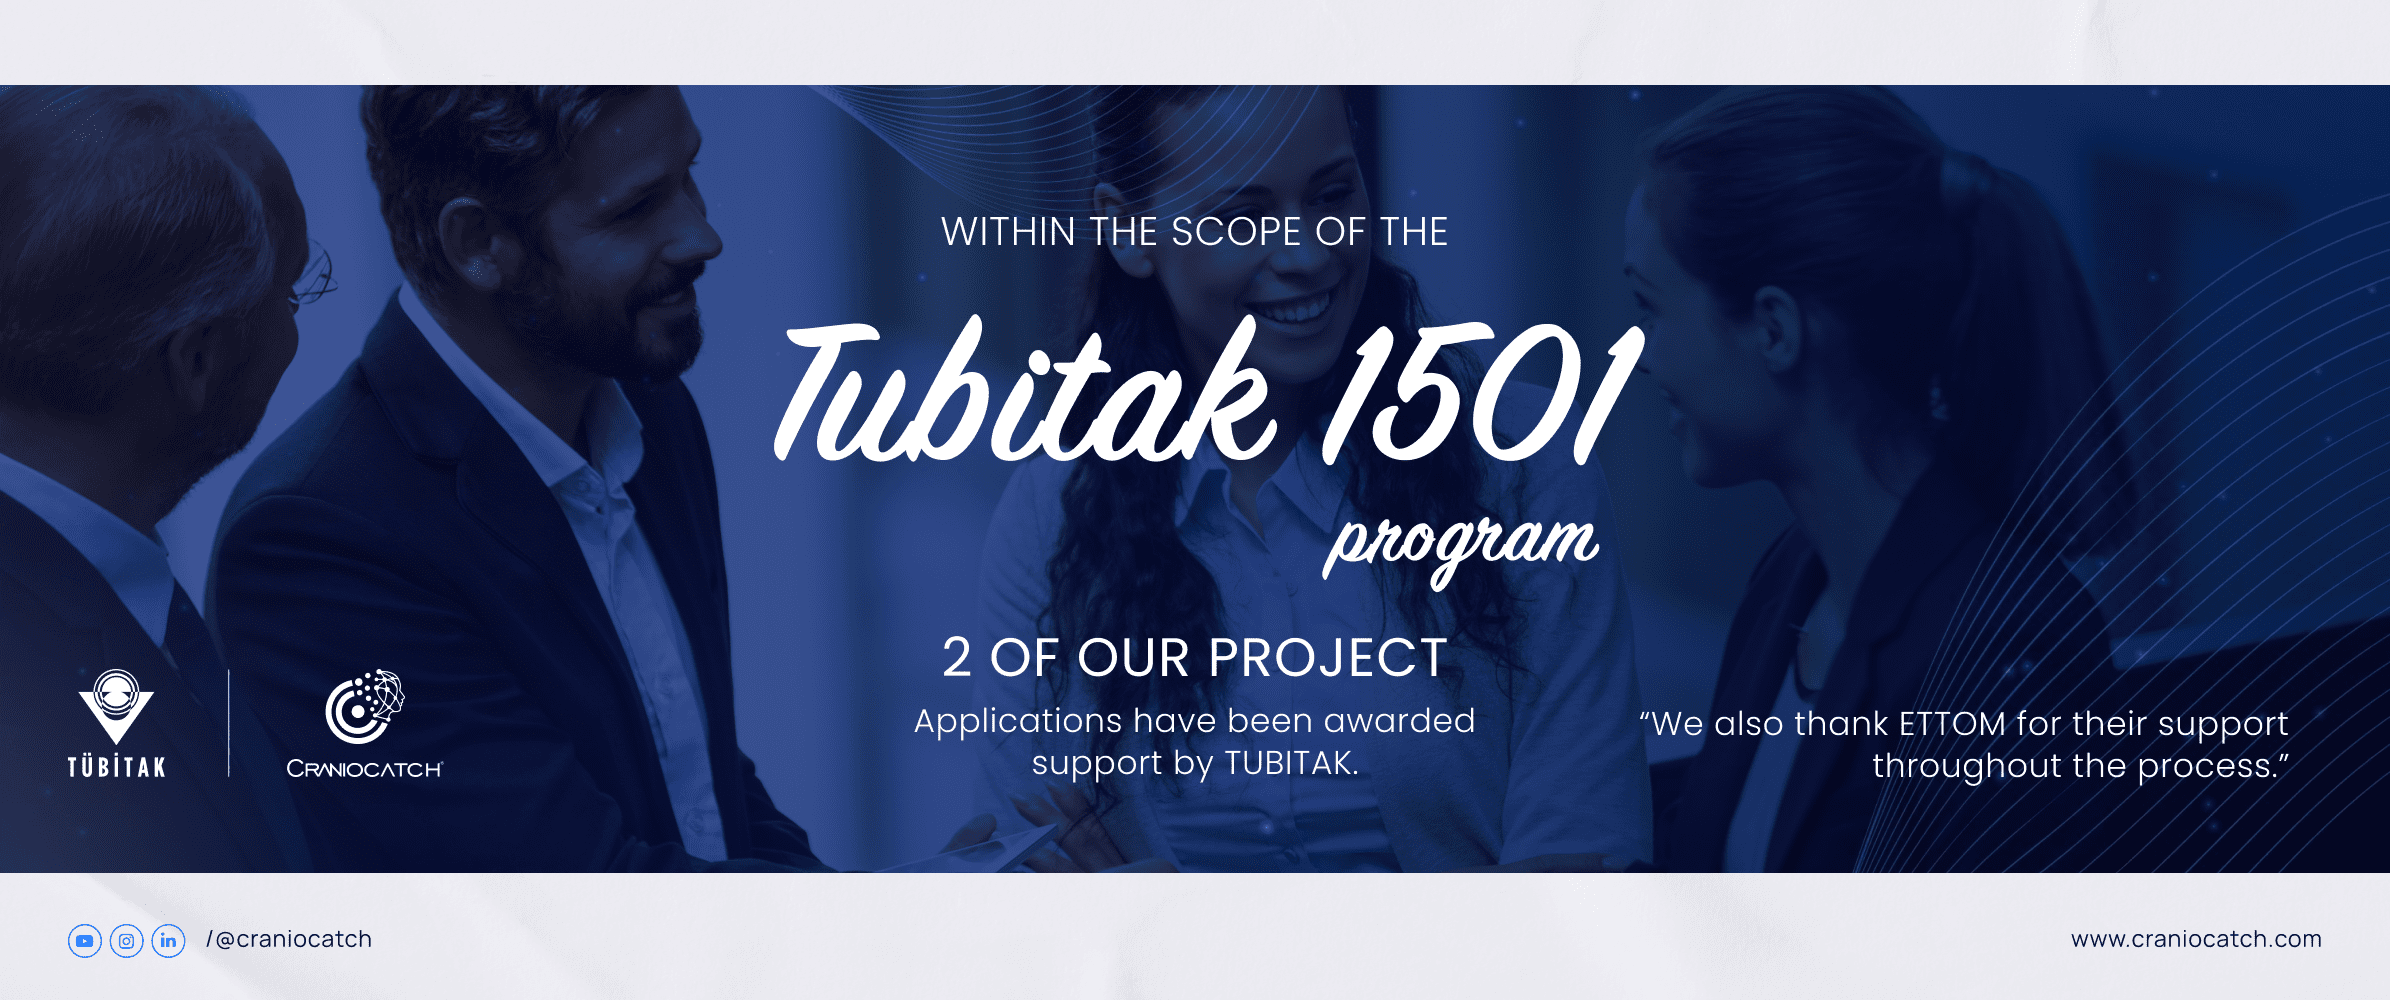 TÜBİTAK 1501 Programı kapsamında sunduğumuz iki proje teklifinin TÜBİTAK tarafından destekleniyor!